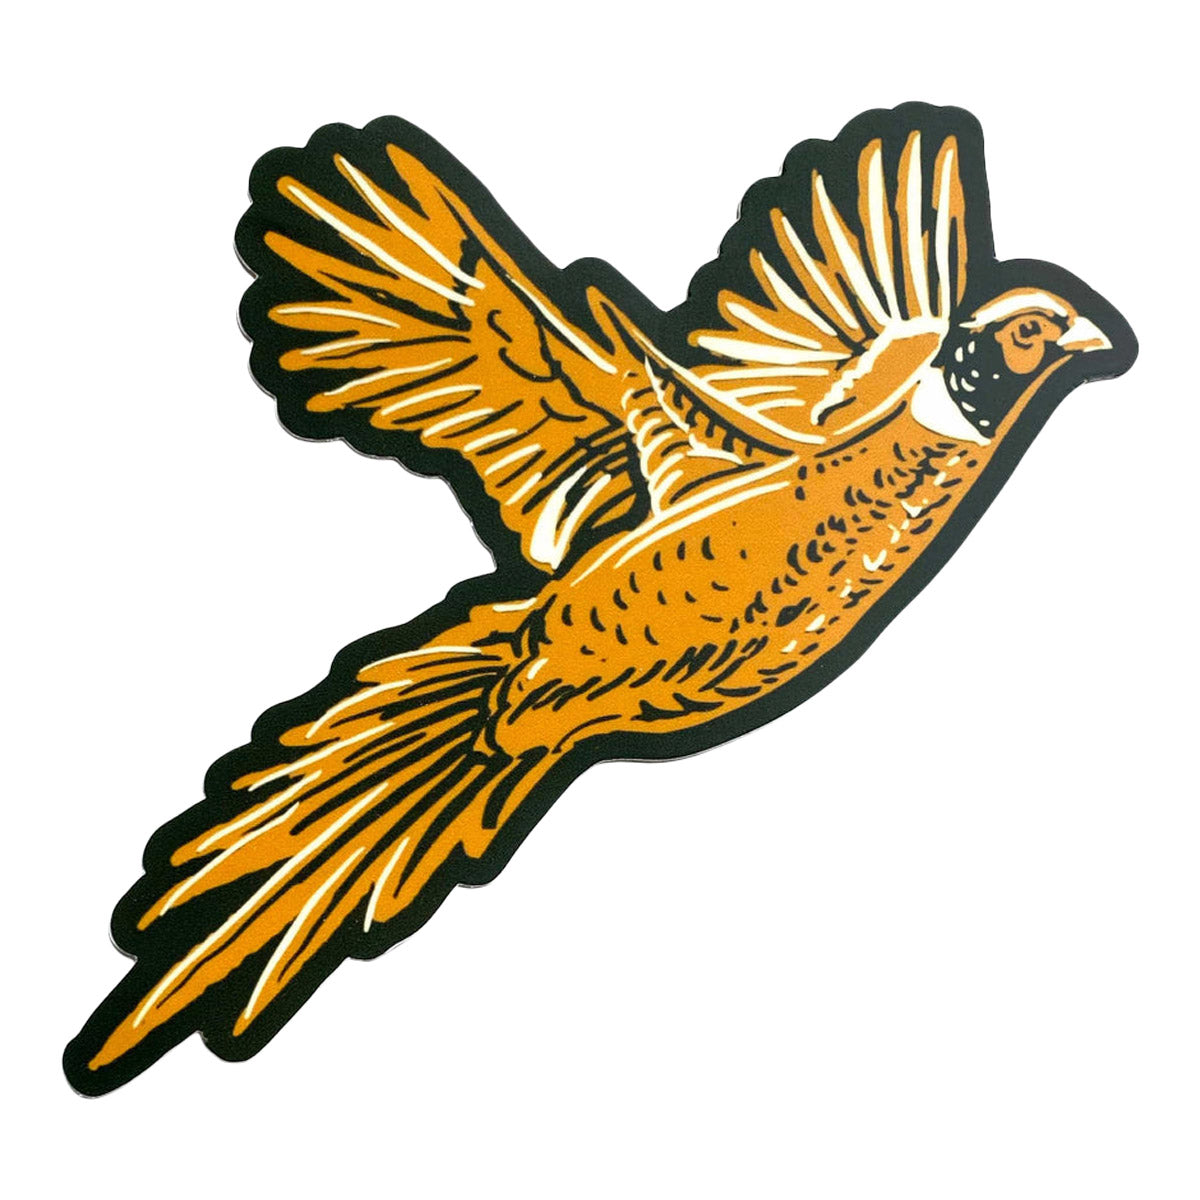 The Wild Wander Pheasant Sticker